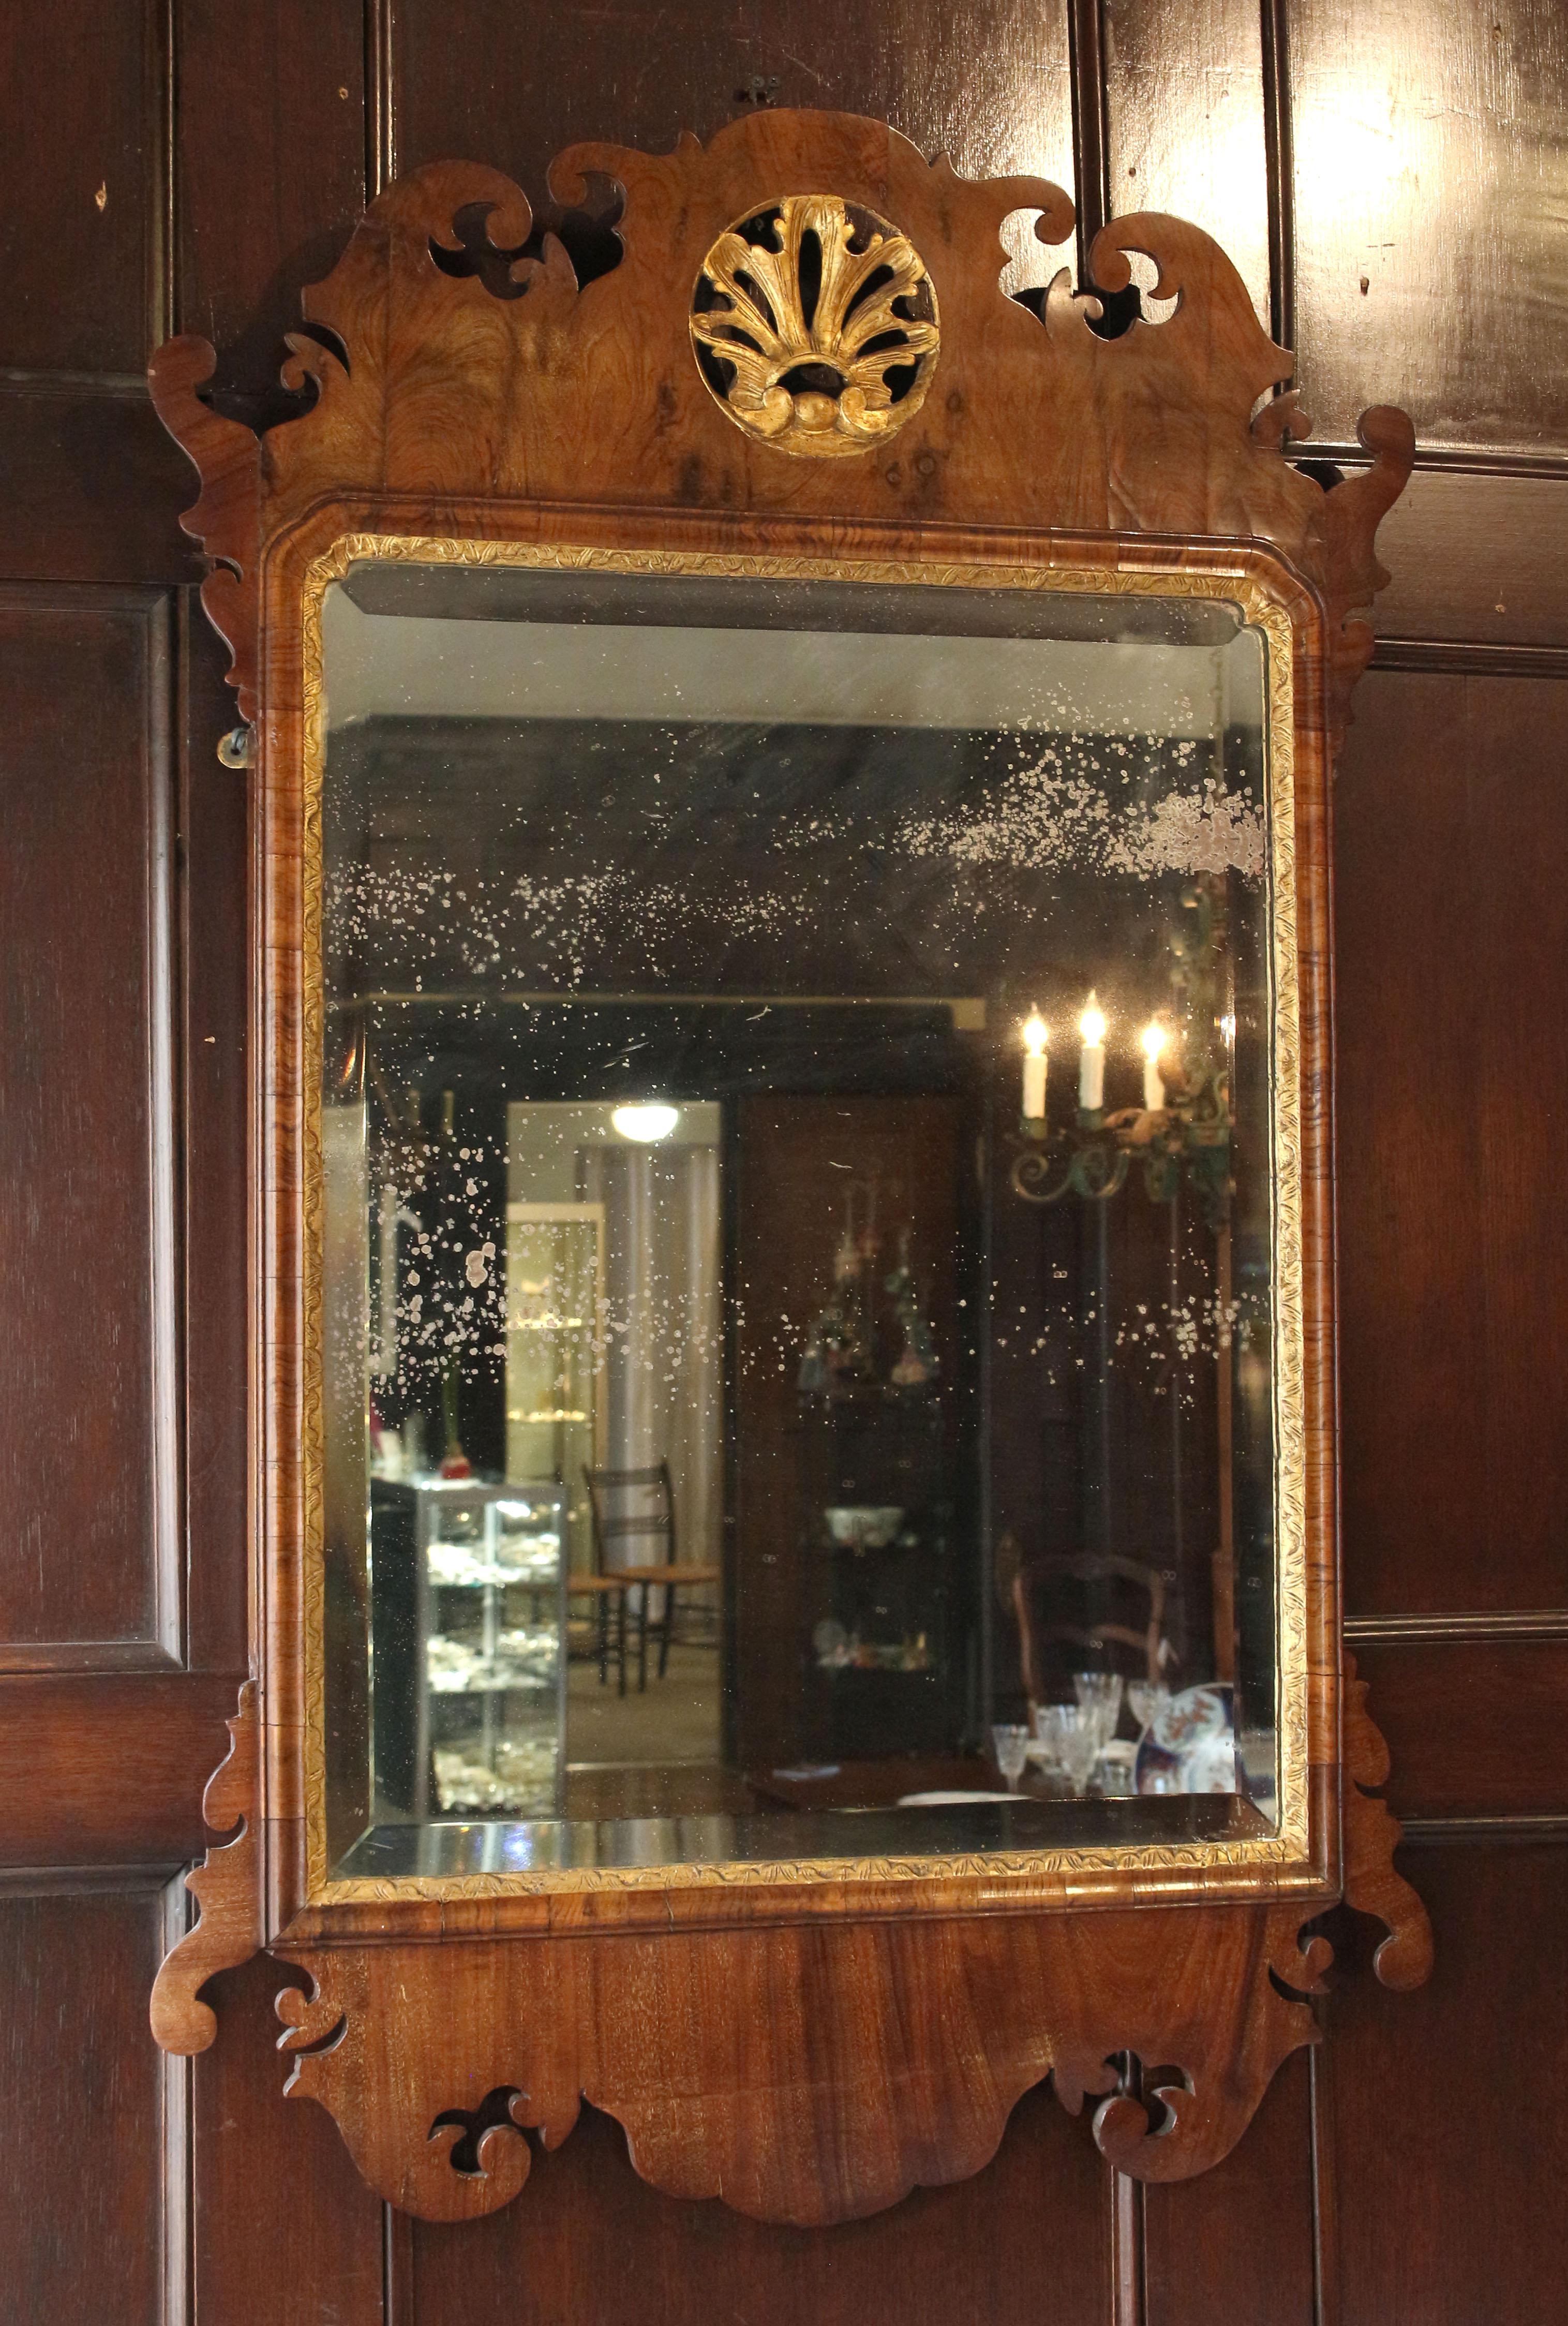 Miroir d'époque George II-George III du milieu du XVIIIe siècle, anglais. Noyer avec dorure parcellaire. Cartouche central rond et doré dans la crête supérieure bien formée. Plaque de miroir en verre biseauté à bordures dorées avec des dépôts de